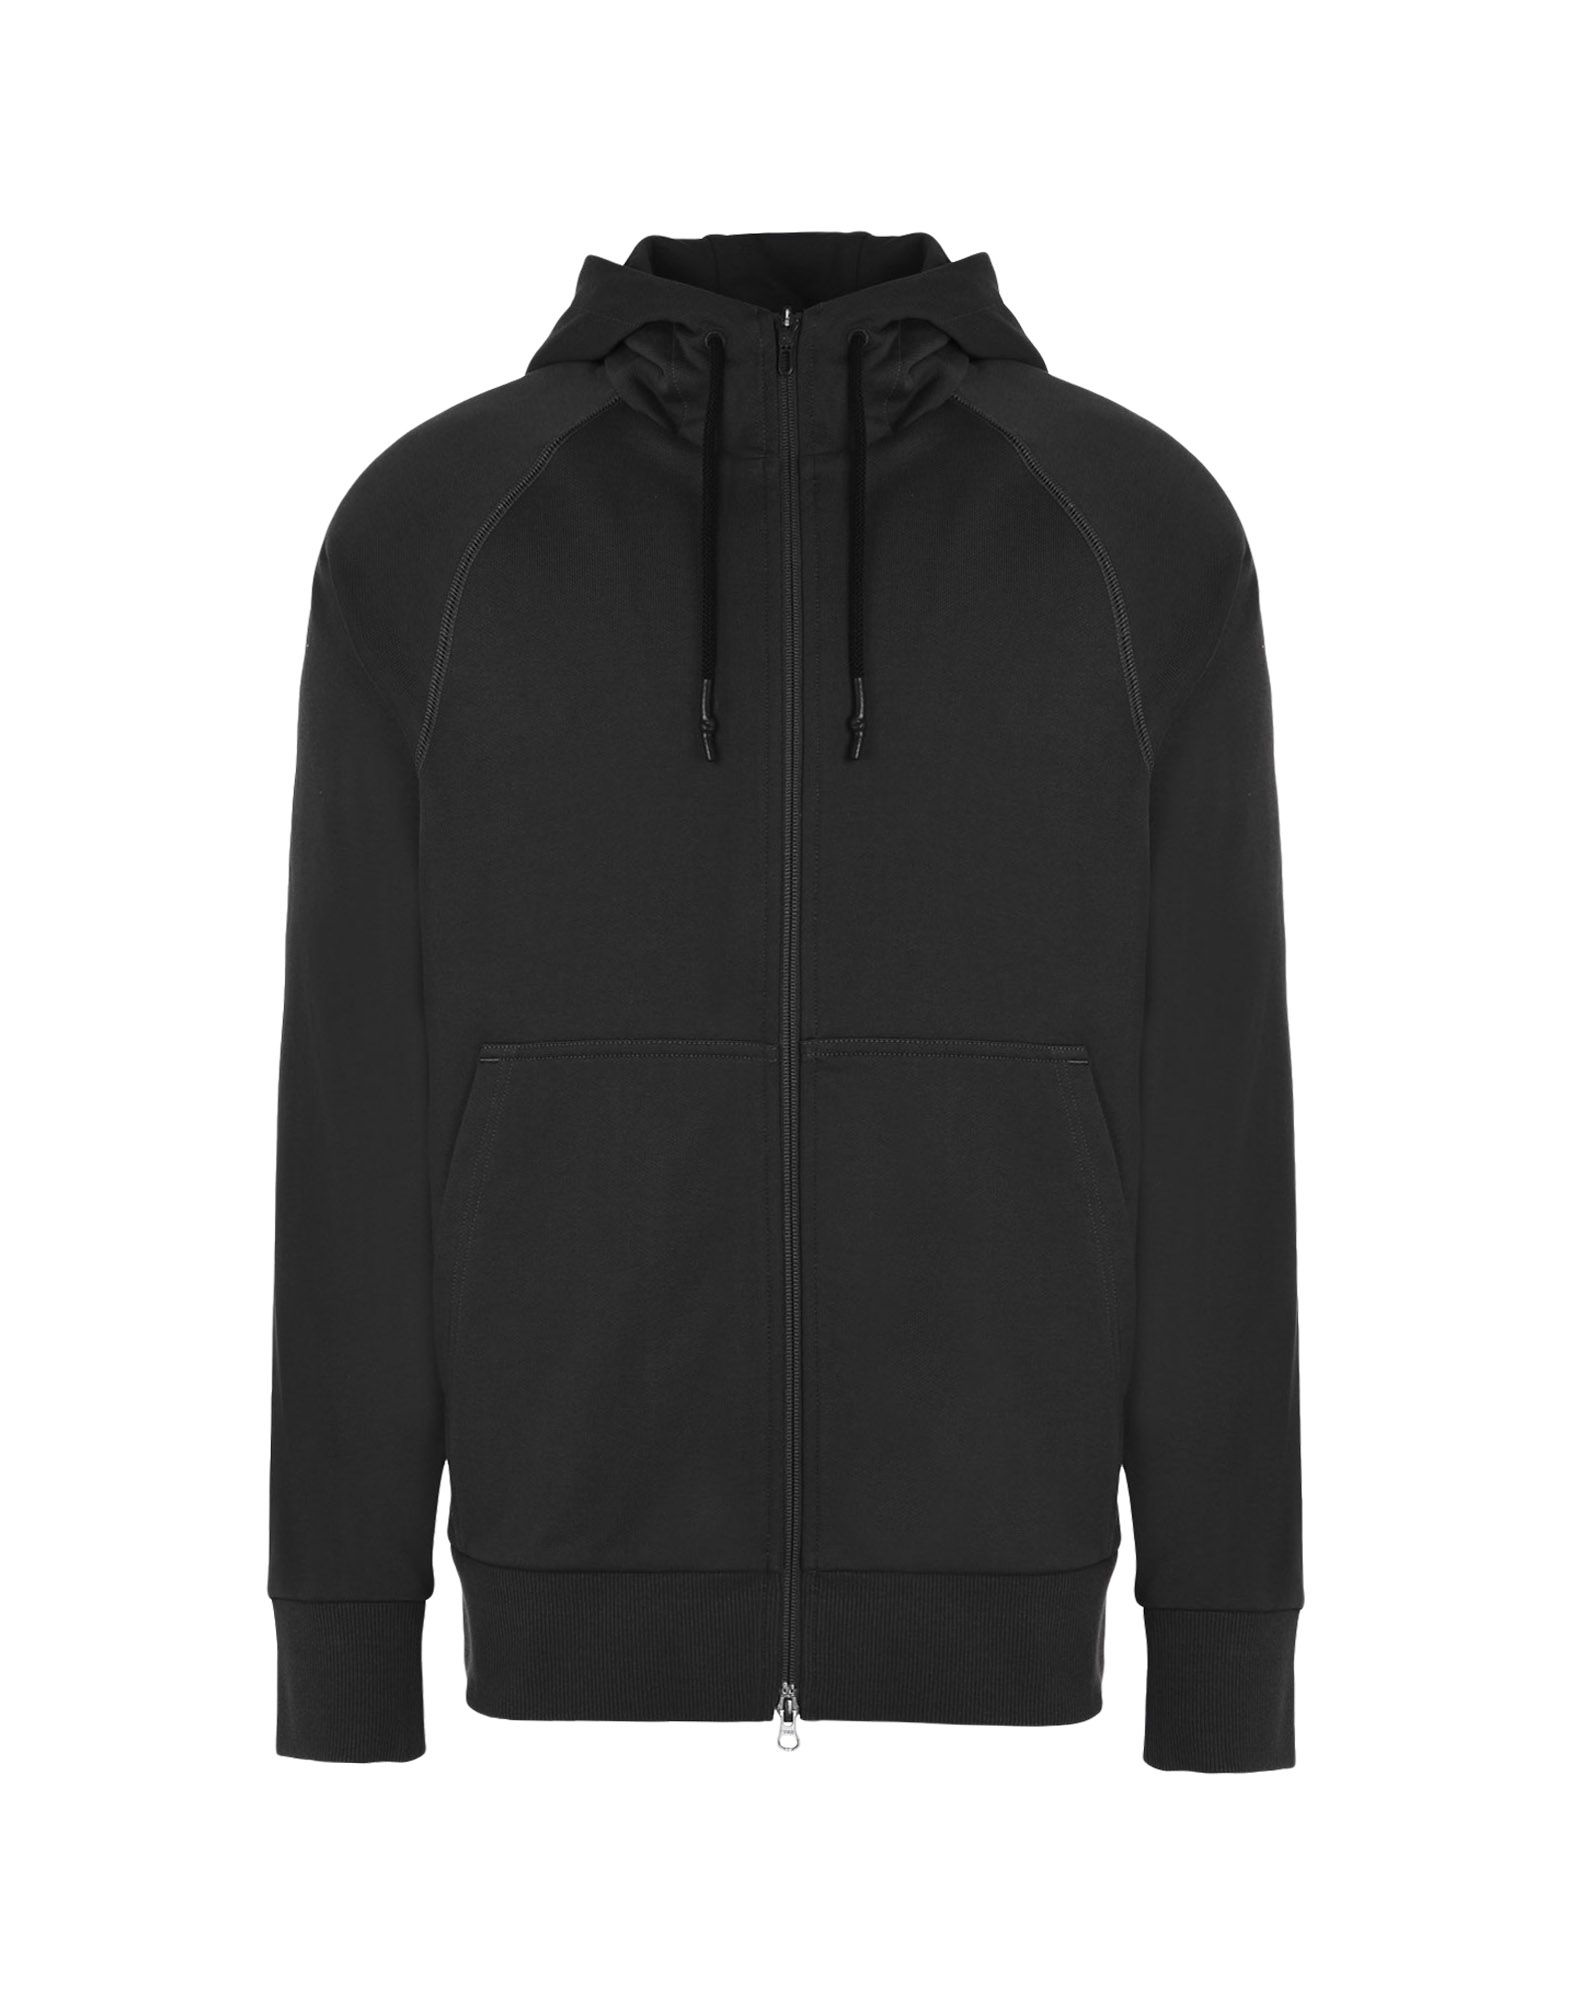 adidas black zip hoodie